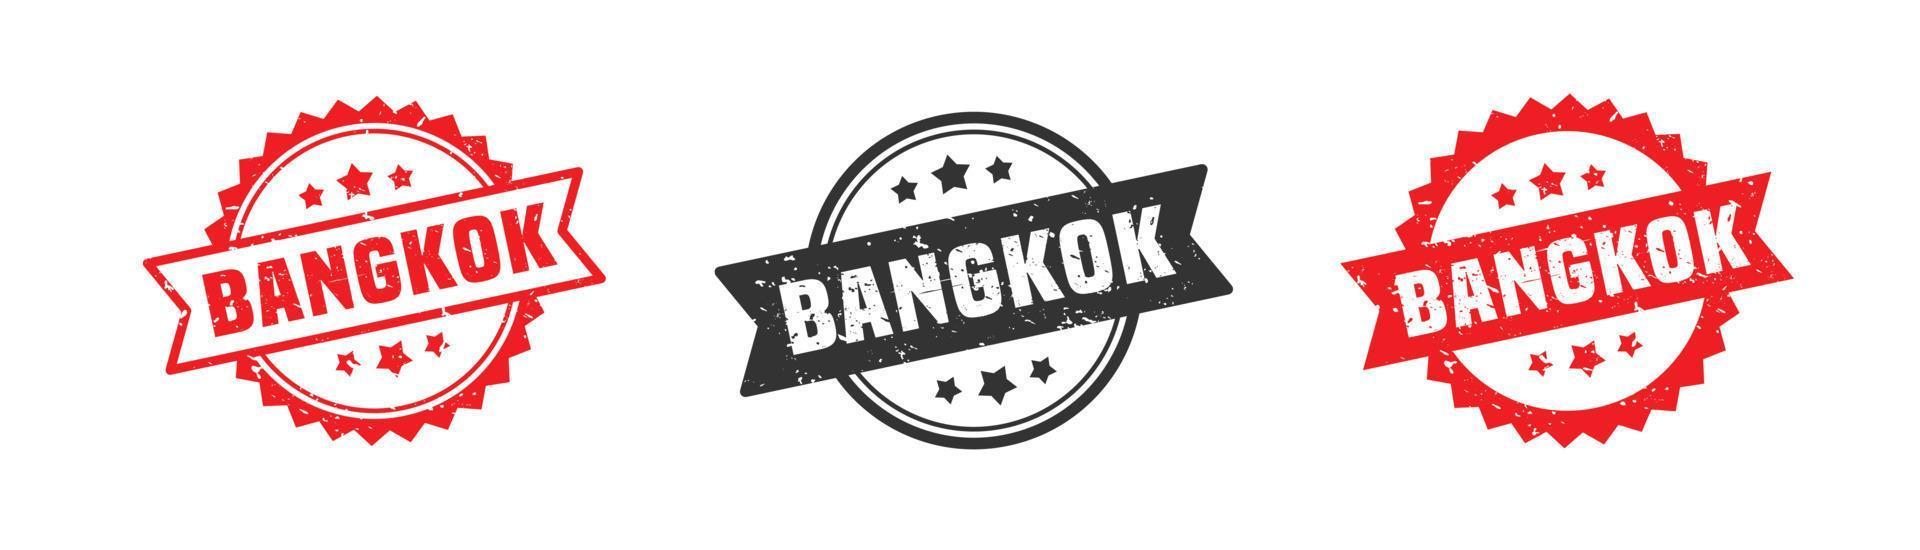 Bangkok Thailand Stempelgummi mit Grunge-Stil auf weißem Hintergrund vektor